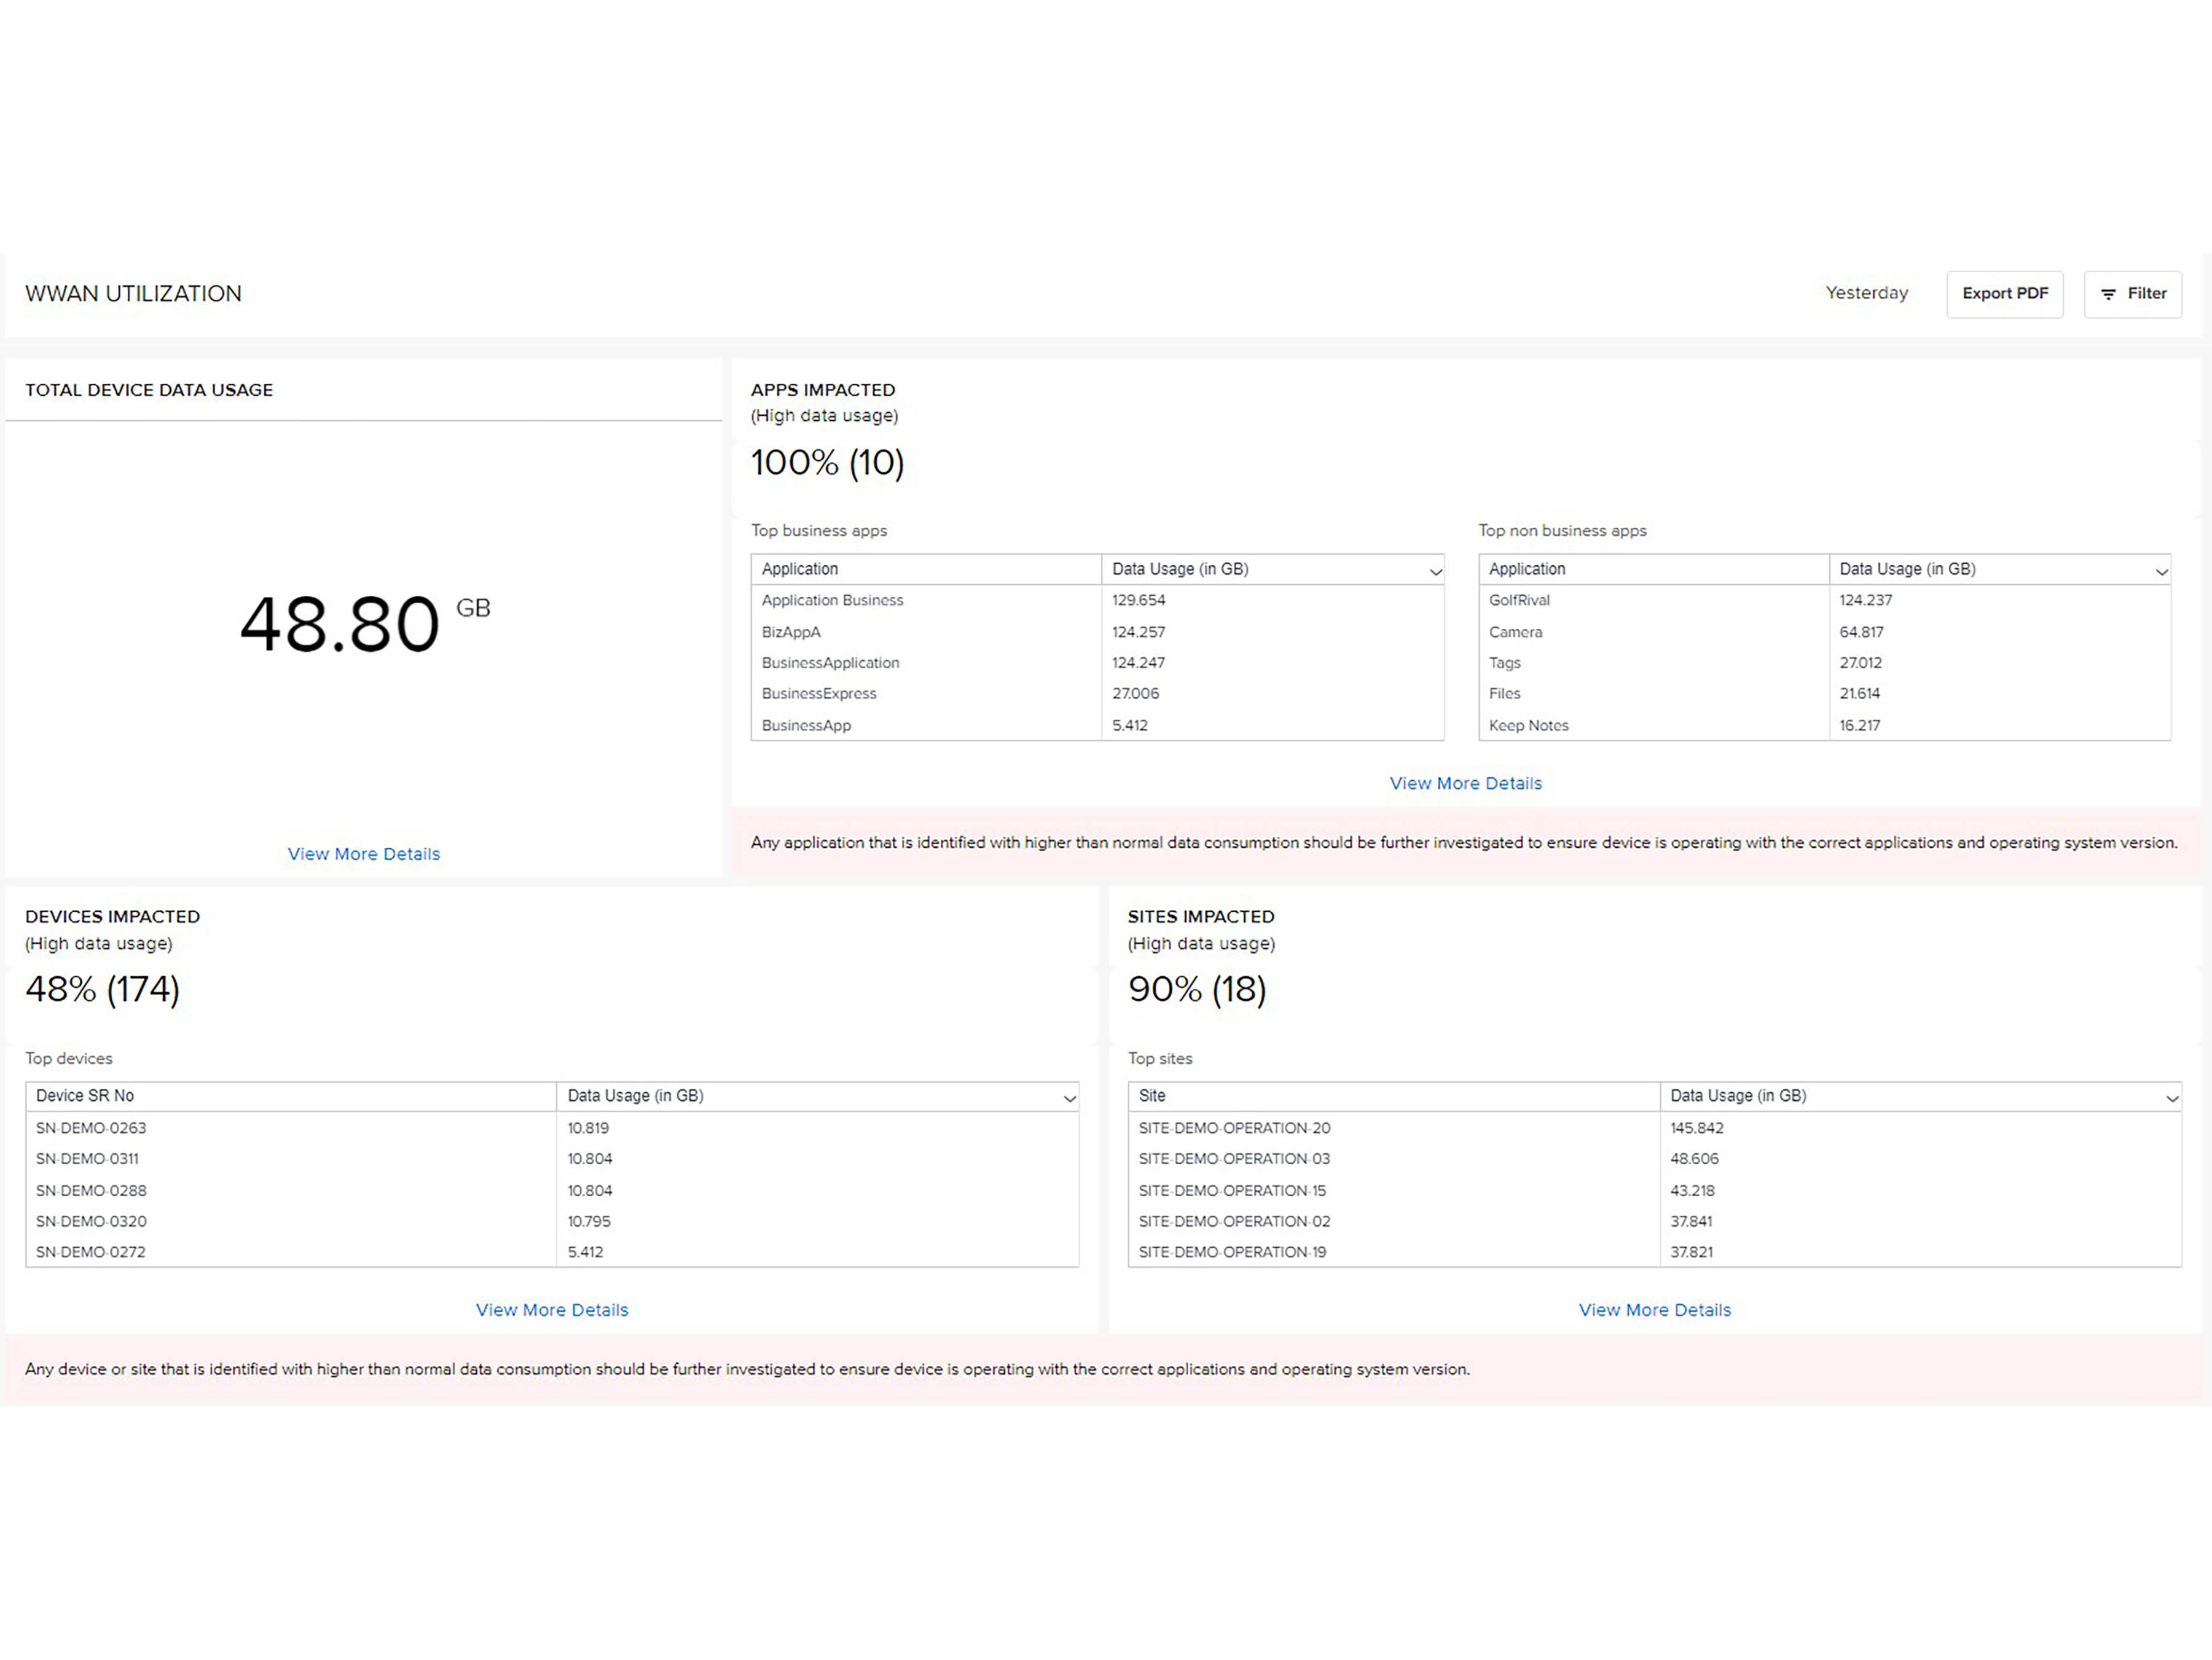 A screenshot of the Zebra VisibilityIQ Foresight WWAN Utilization Report